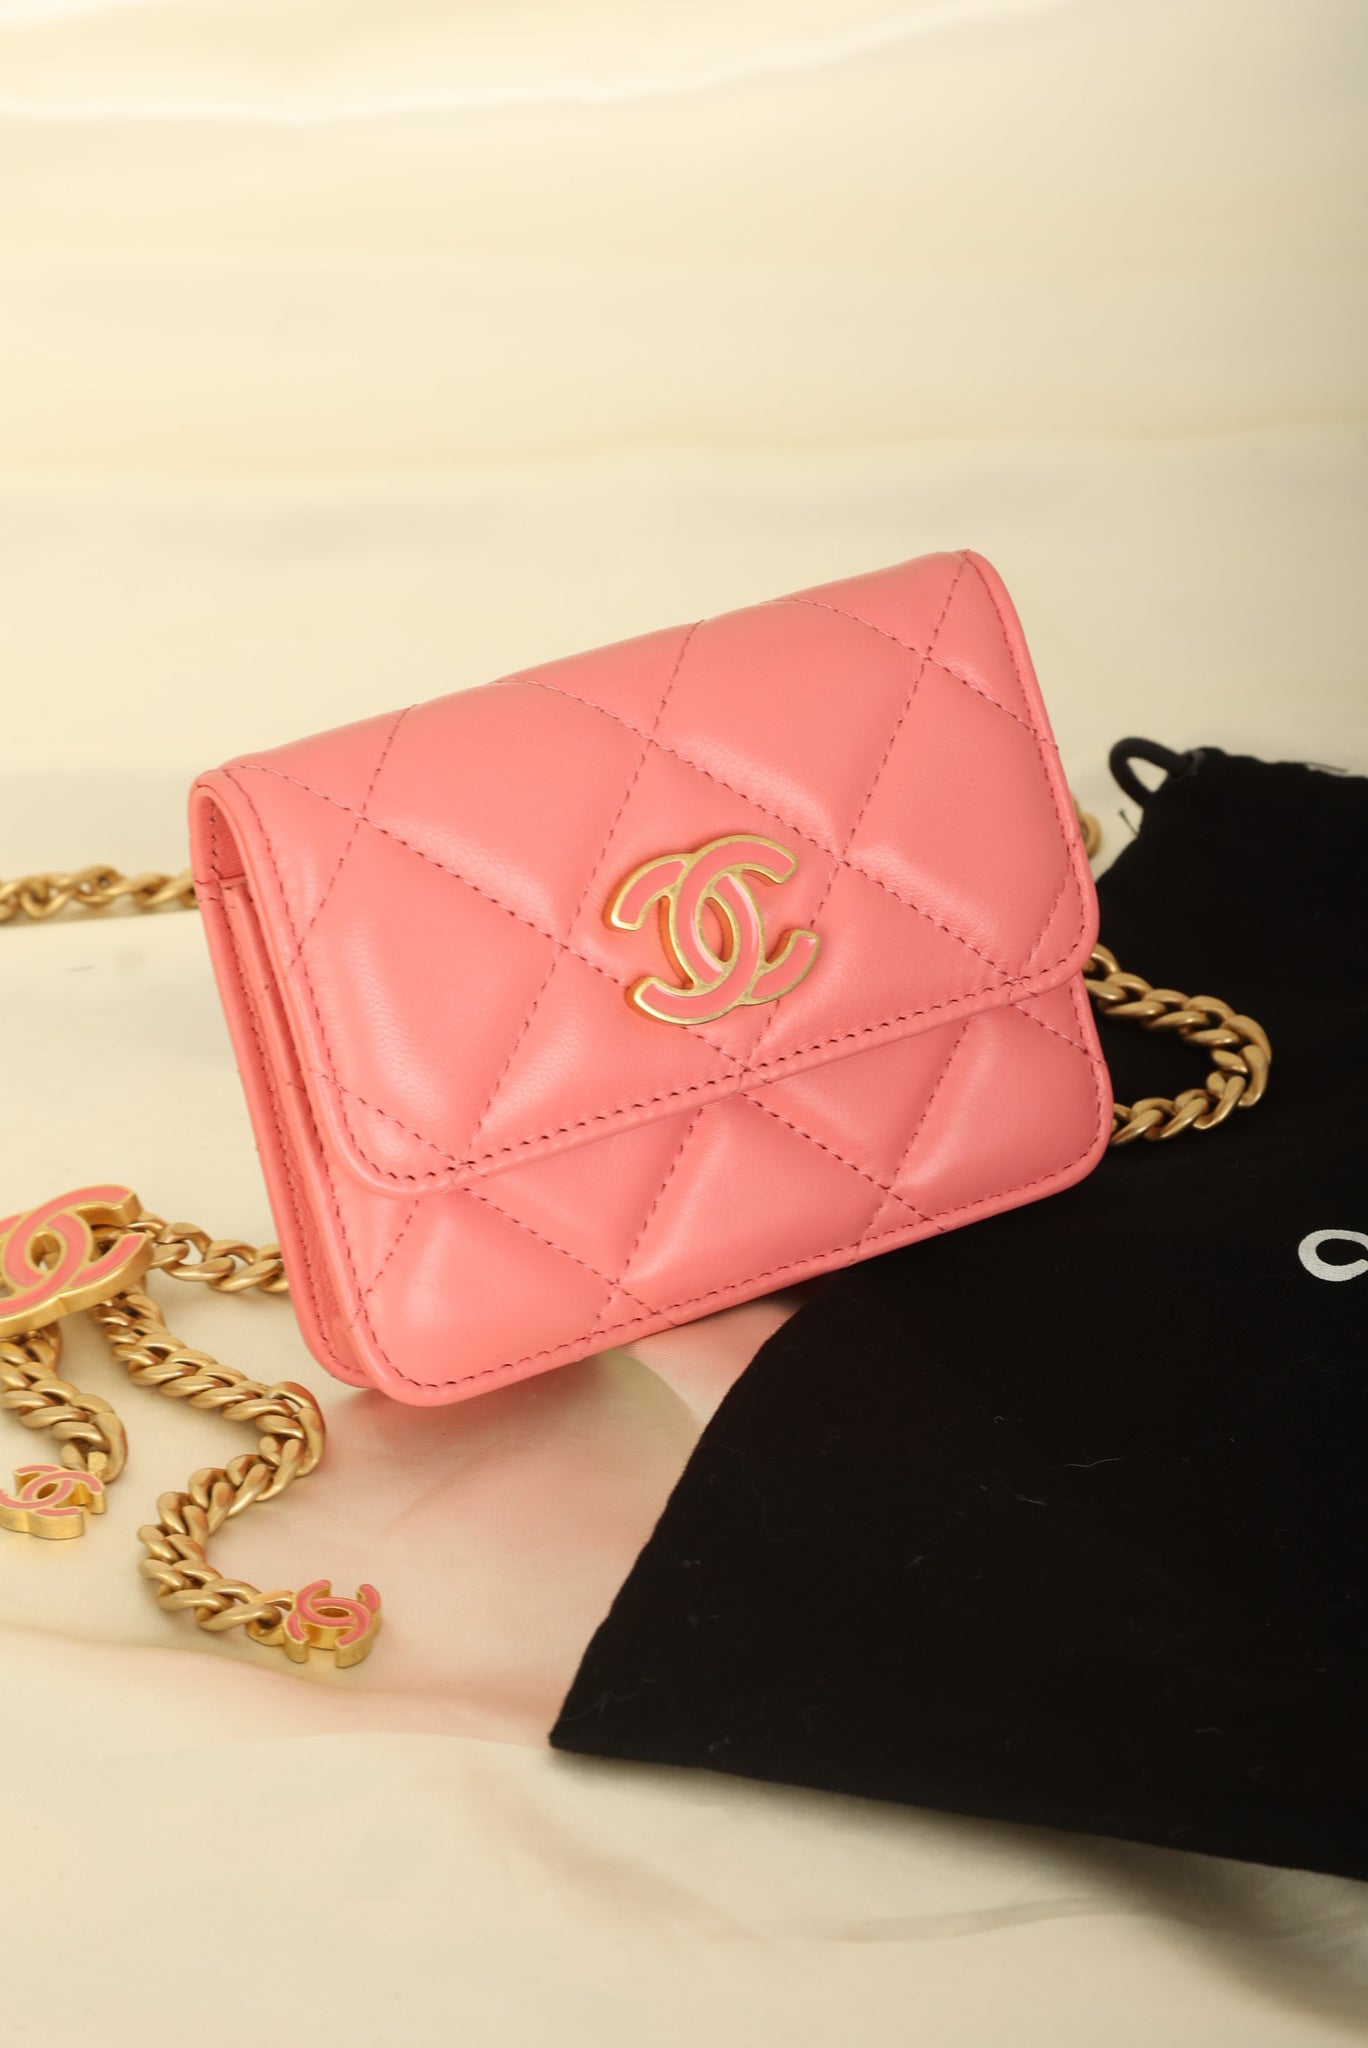 Chanel 2021 Lambskin Chain Waist Bag